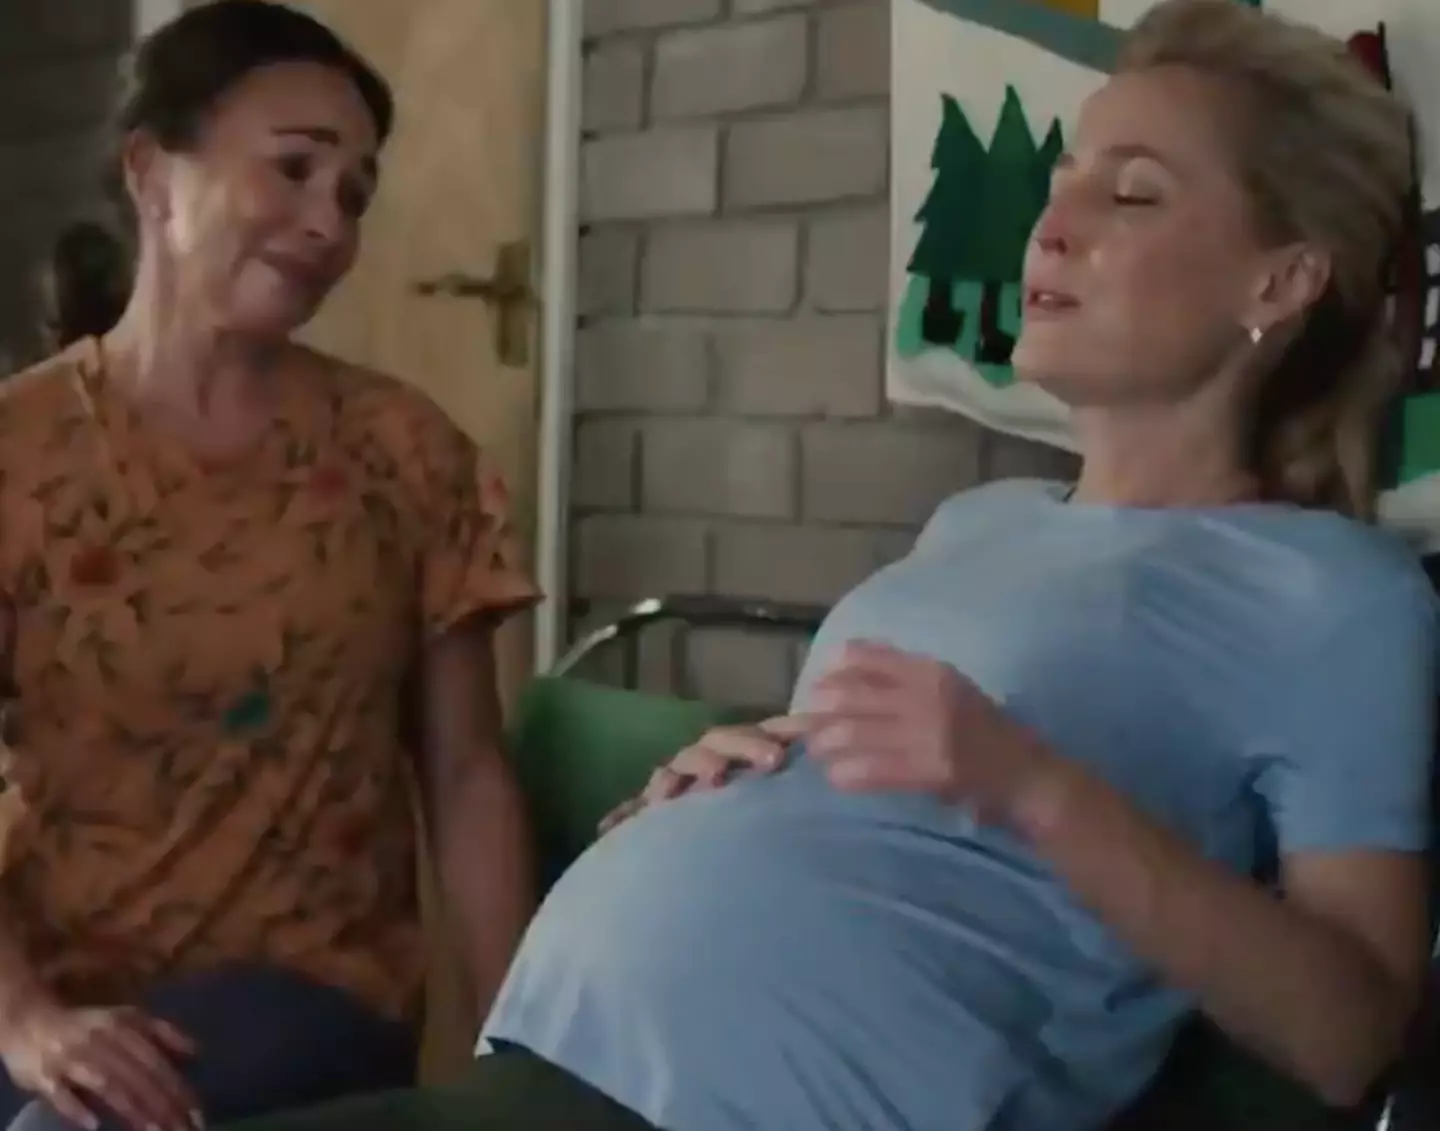 June is pregnant in season 3 (